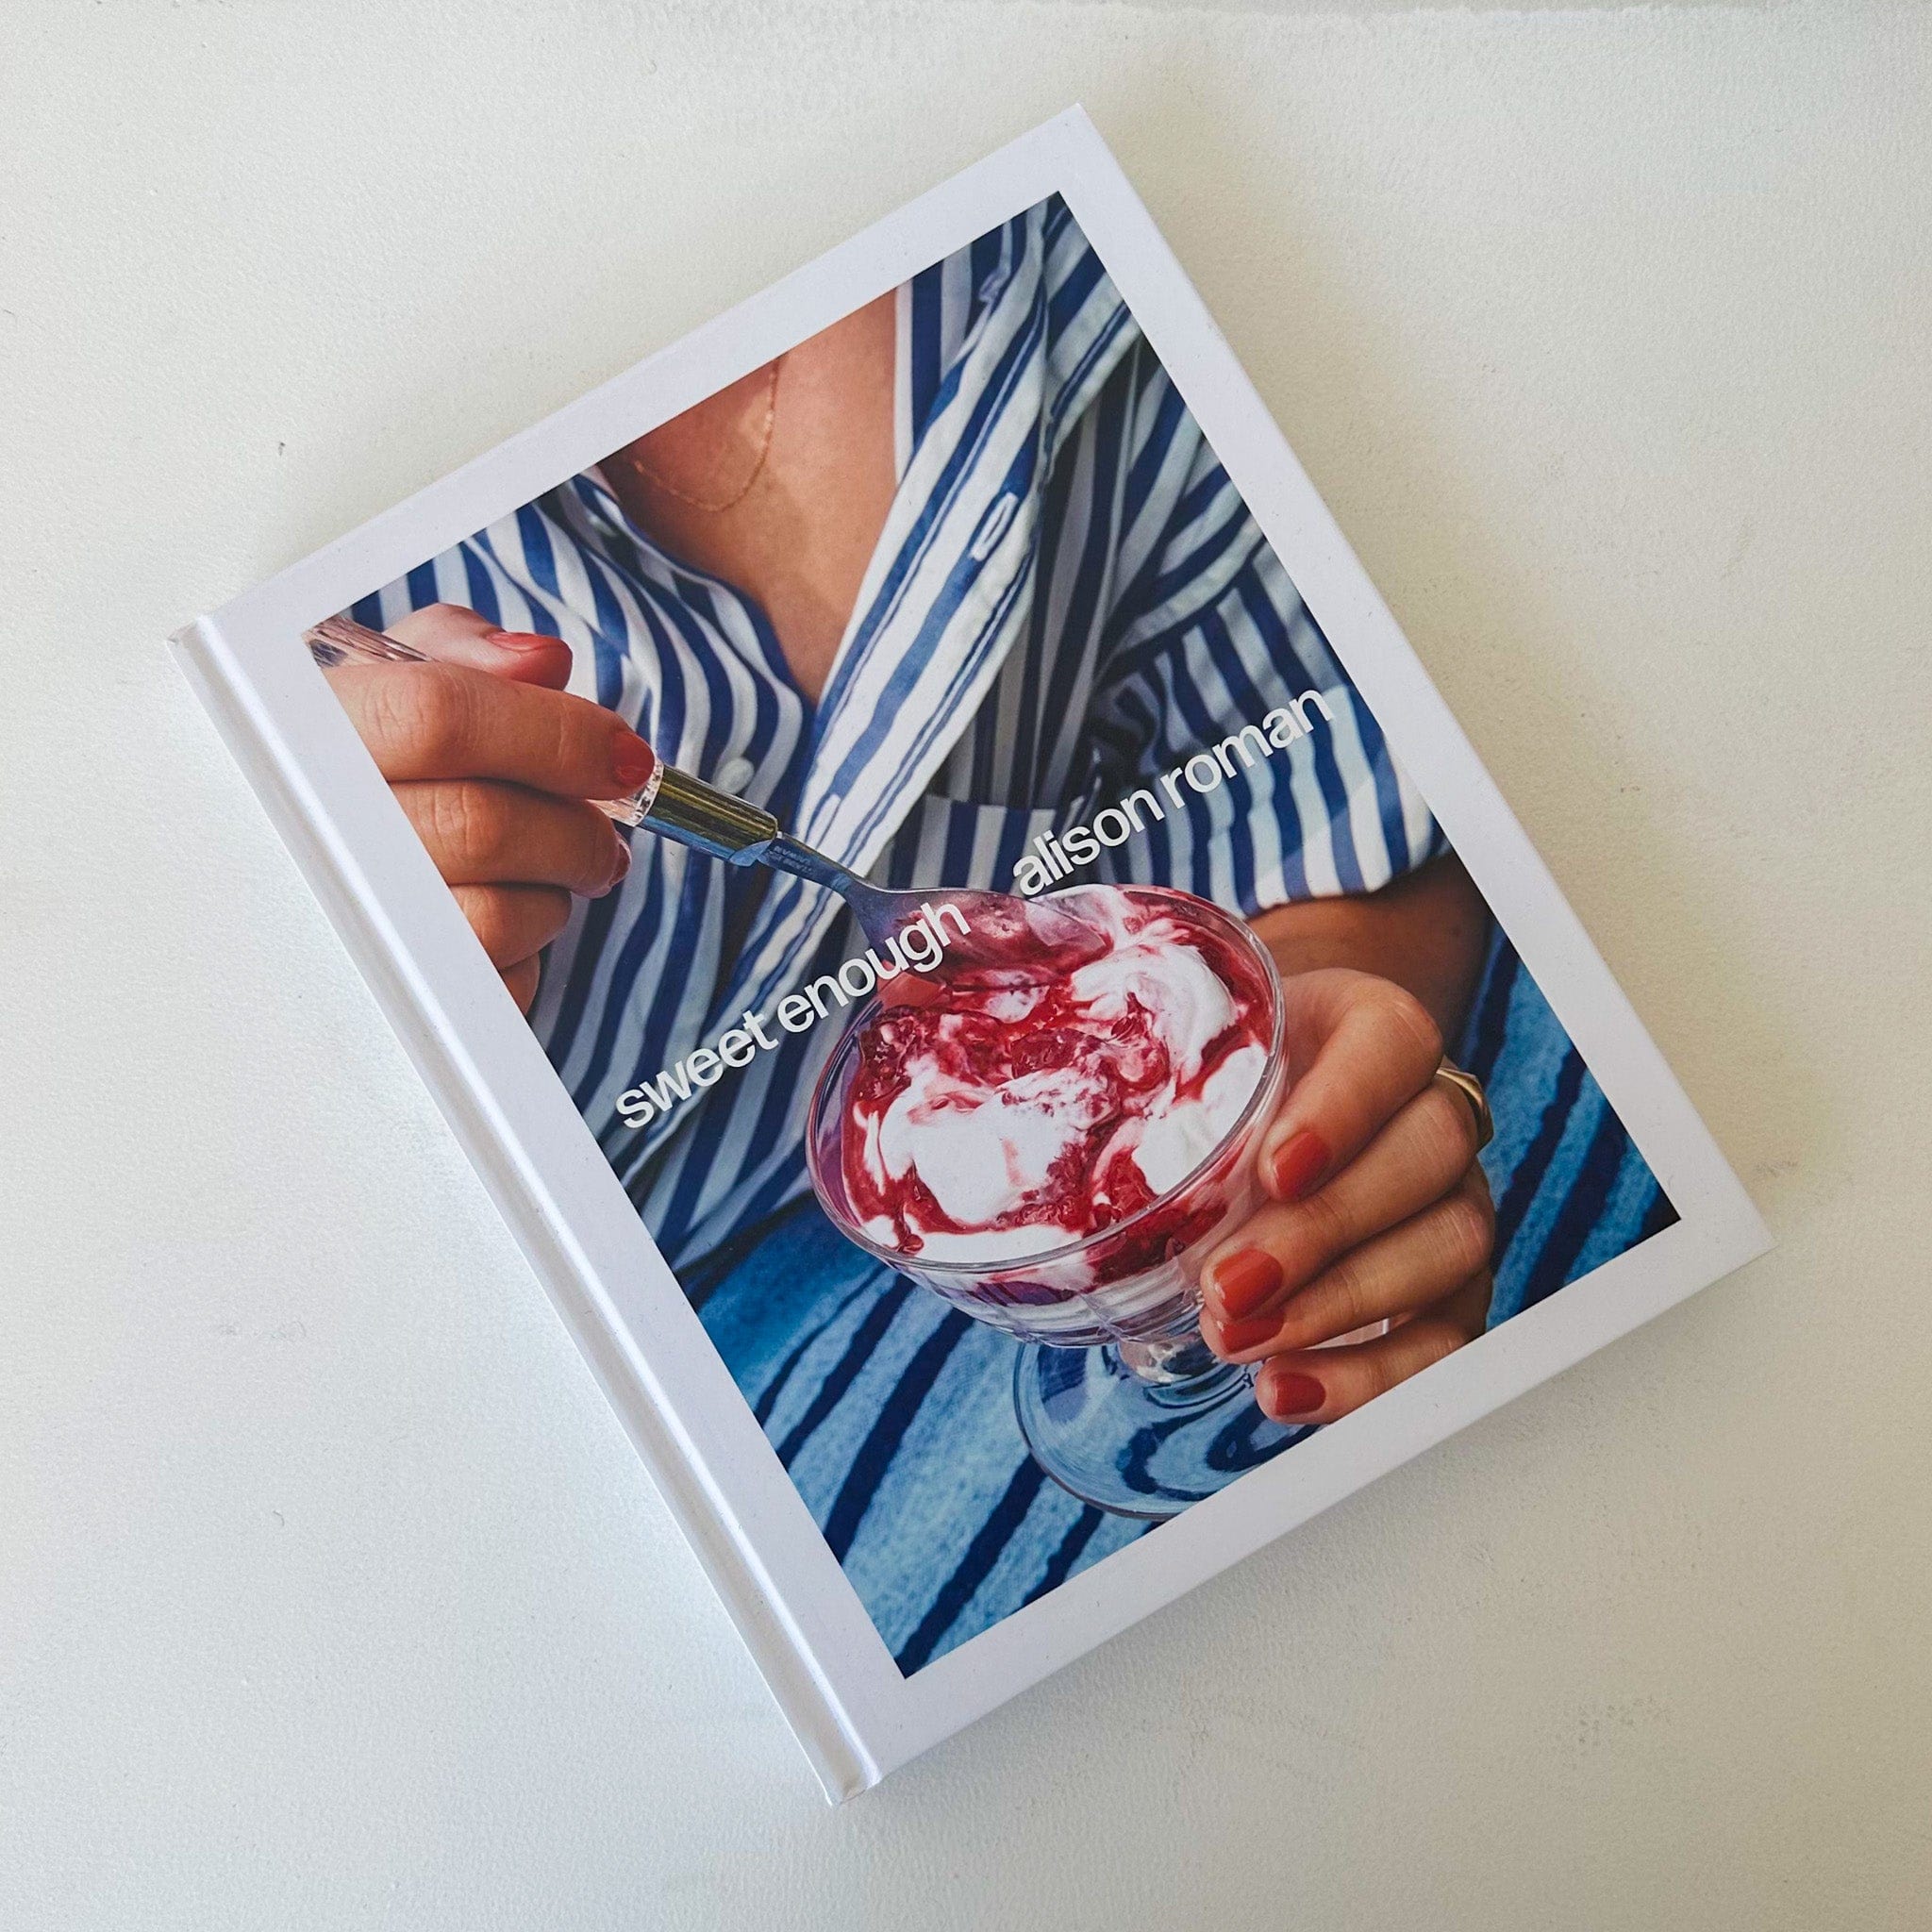 Sweet Enough: A Baking Book [Book]